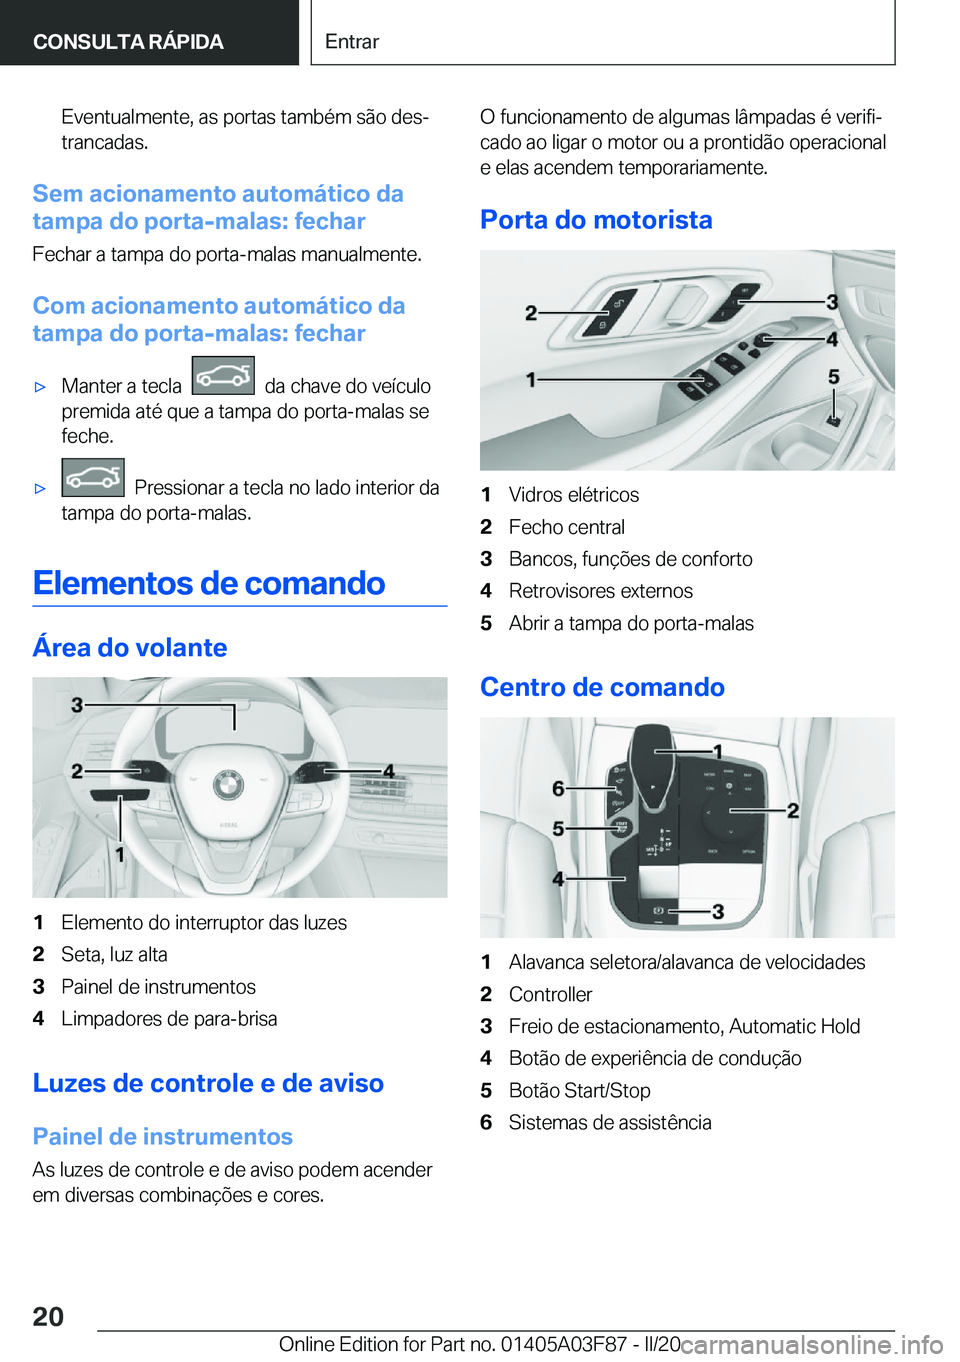 BMW 3 SERIES 2020  Manual do condutor (in Portuguese) �E�v�e�n�t�u�a�l�m�e�n�t�e�,��a�s��p�o�r�t�a�s��t�a�m�b�é�m��s�ã�o��d�e�sª�t�r�a�n�c�a�d�a�s�.
�S�e�m��a�c�i�o�n�a�m�e�n�t�o��a�u�t�o�m�á�t�i�c�o��d�a
�t�a�m�p�a��d�o��p�o�r�t�a�-�m�a�l